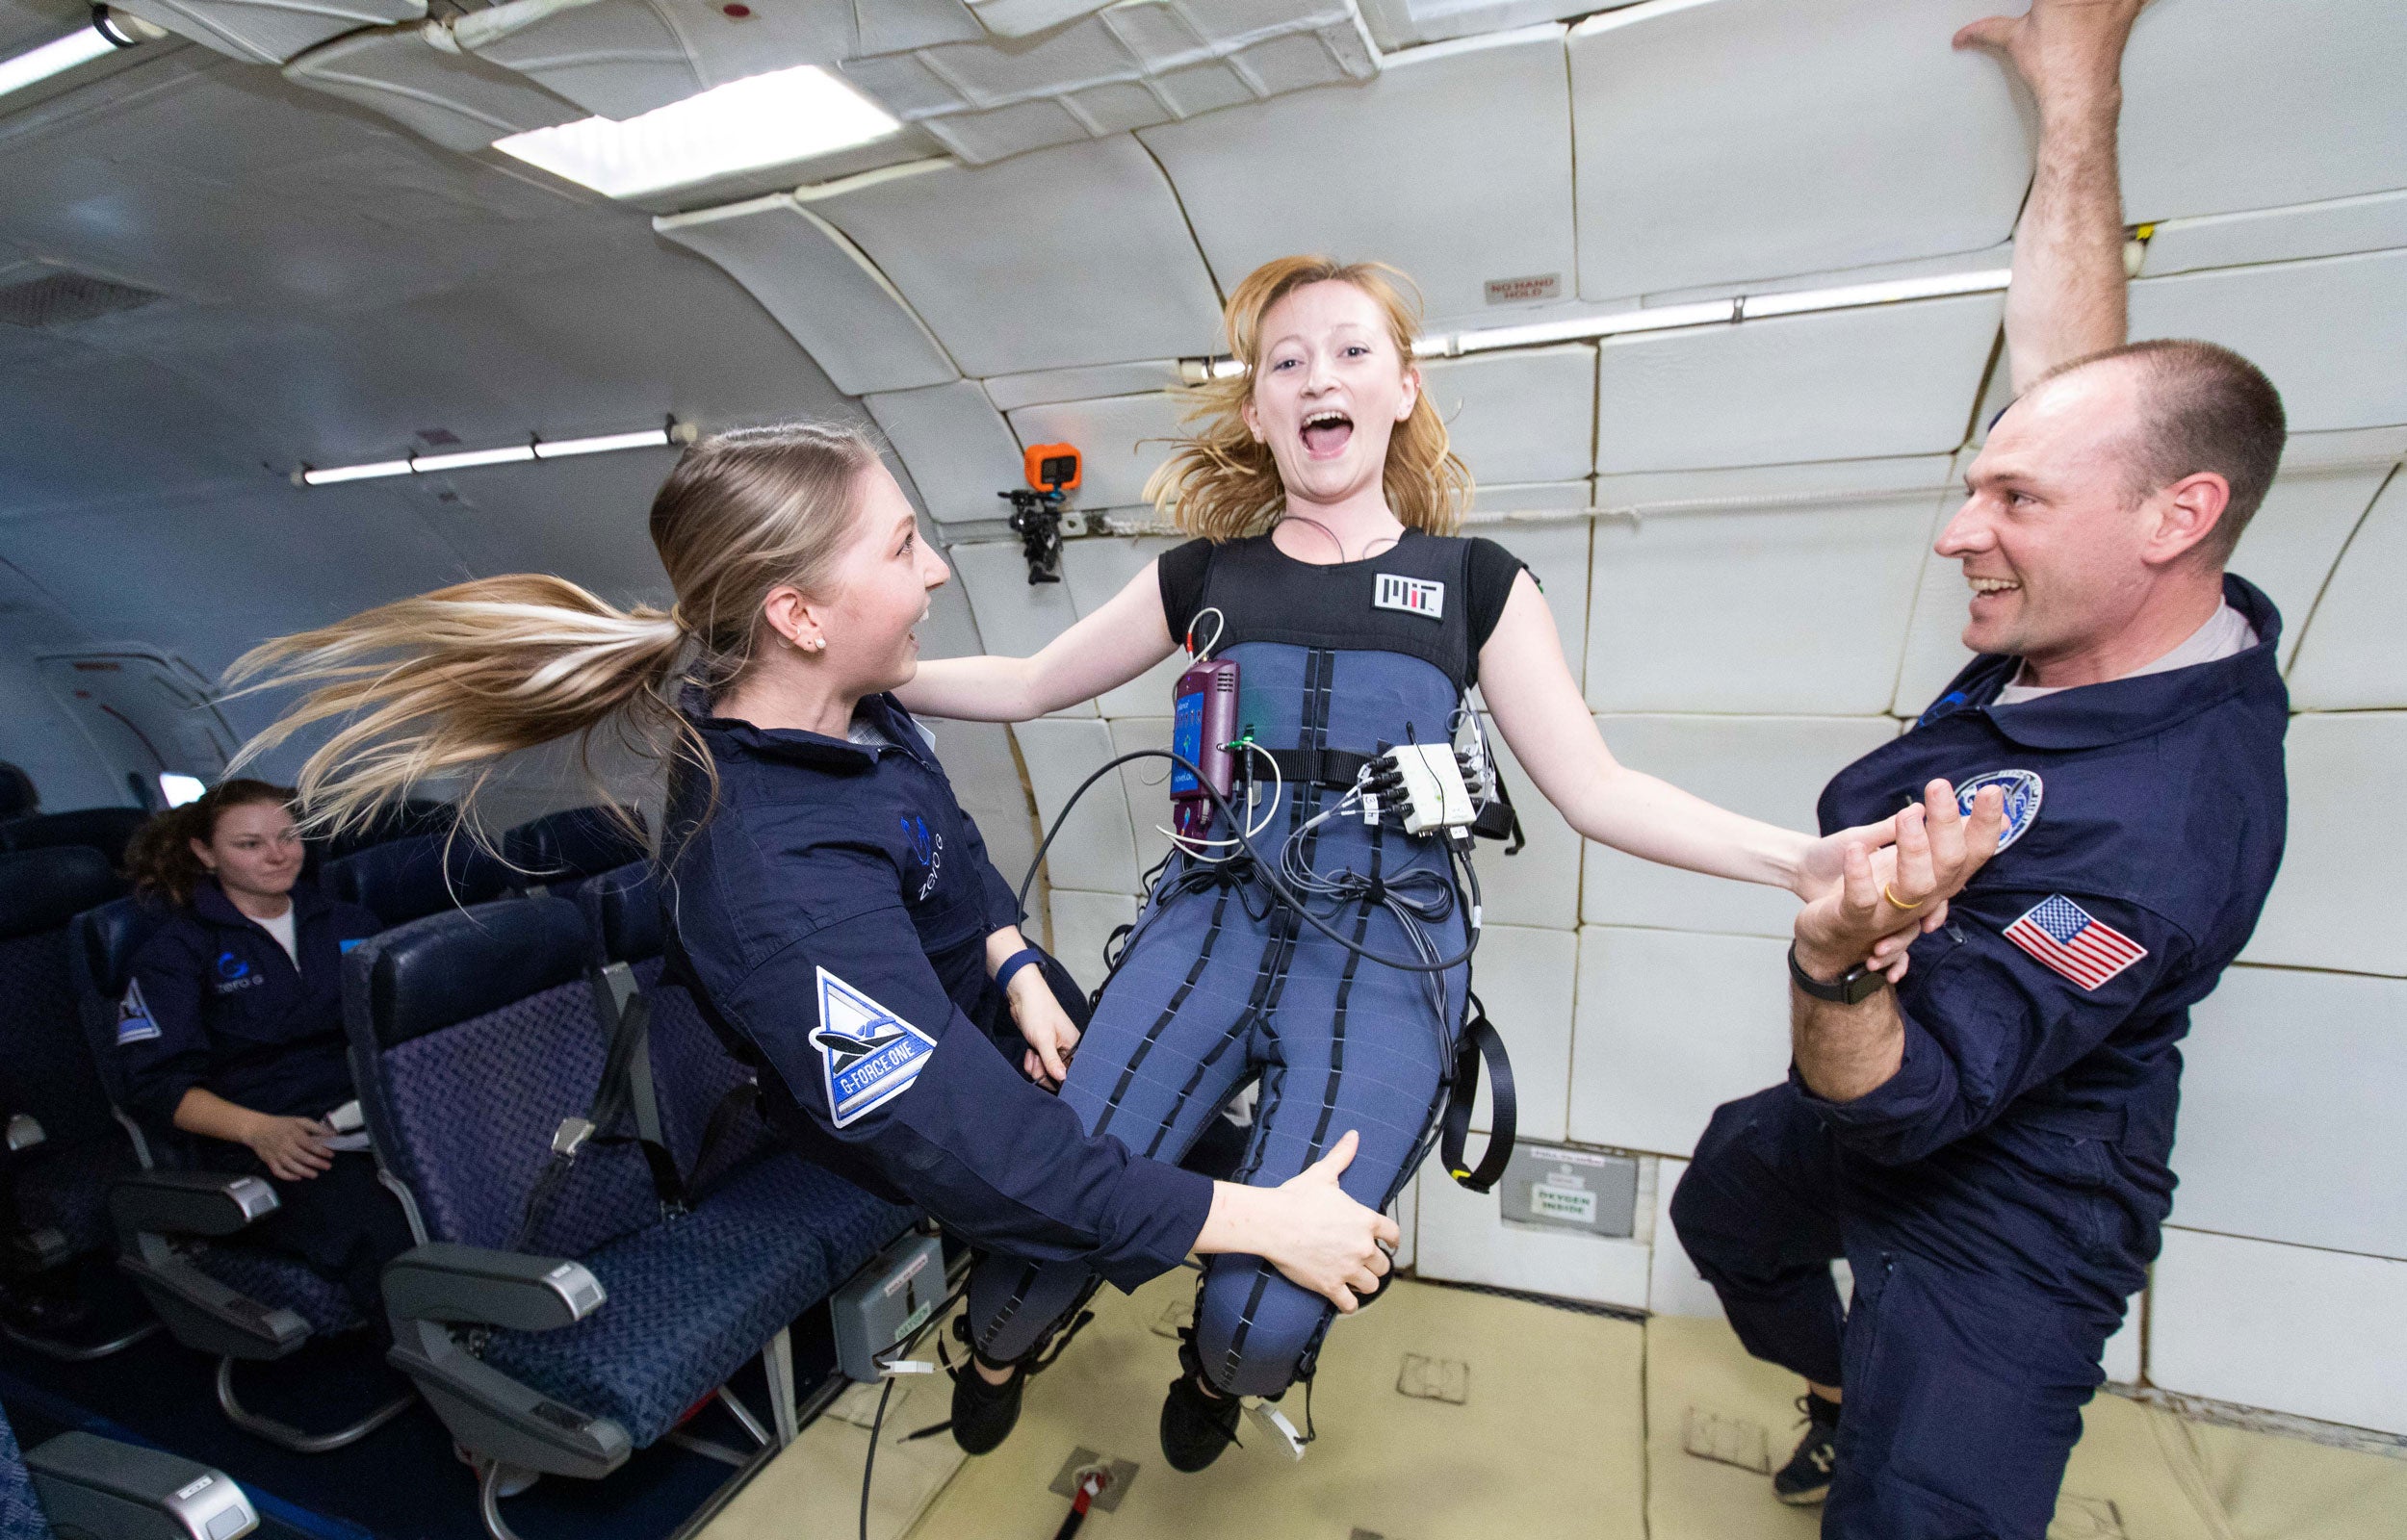 Rachel Bellisle experiencing zero gravity